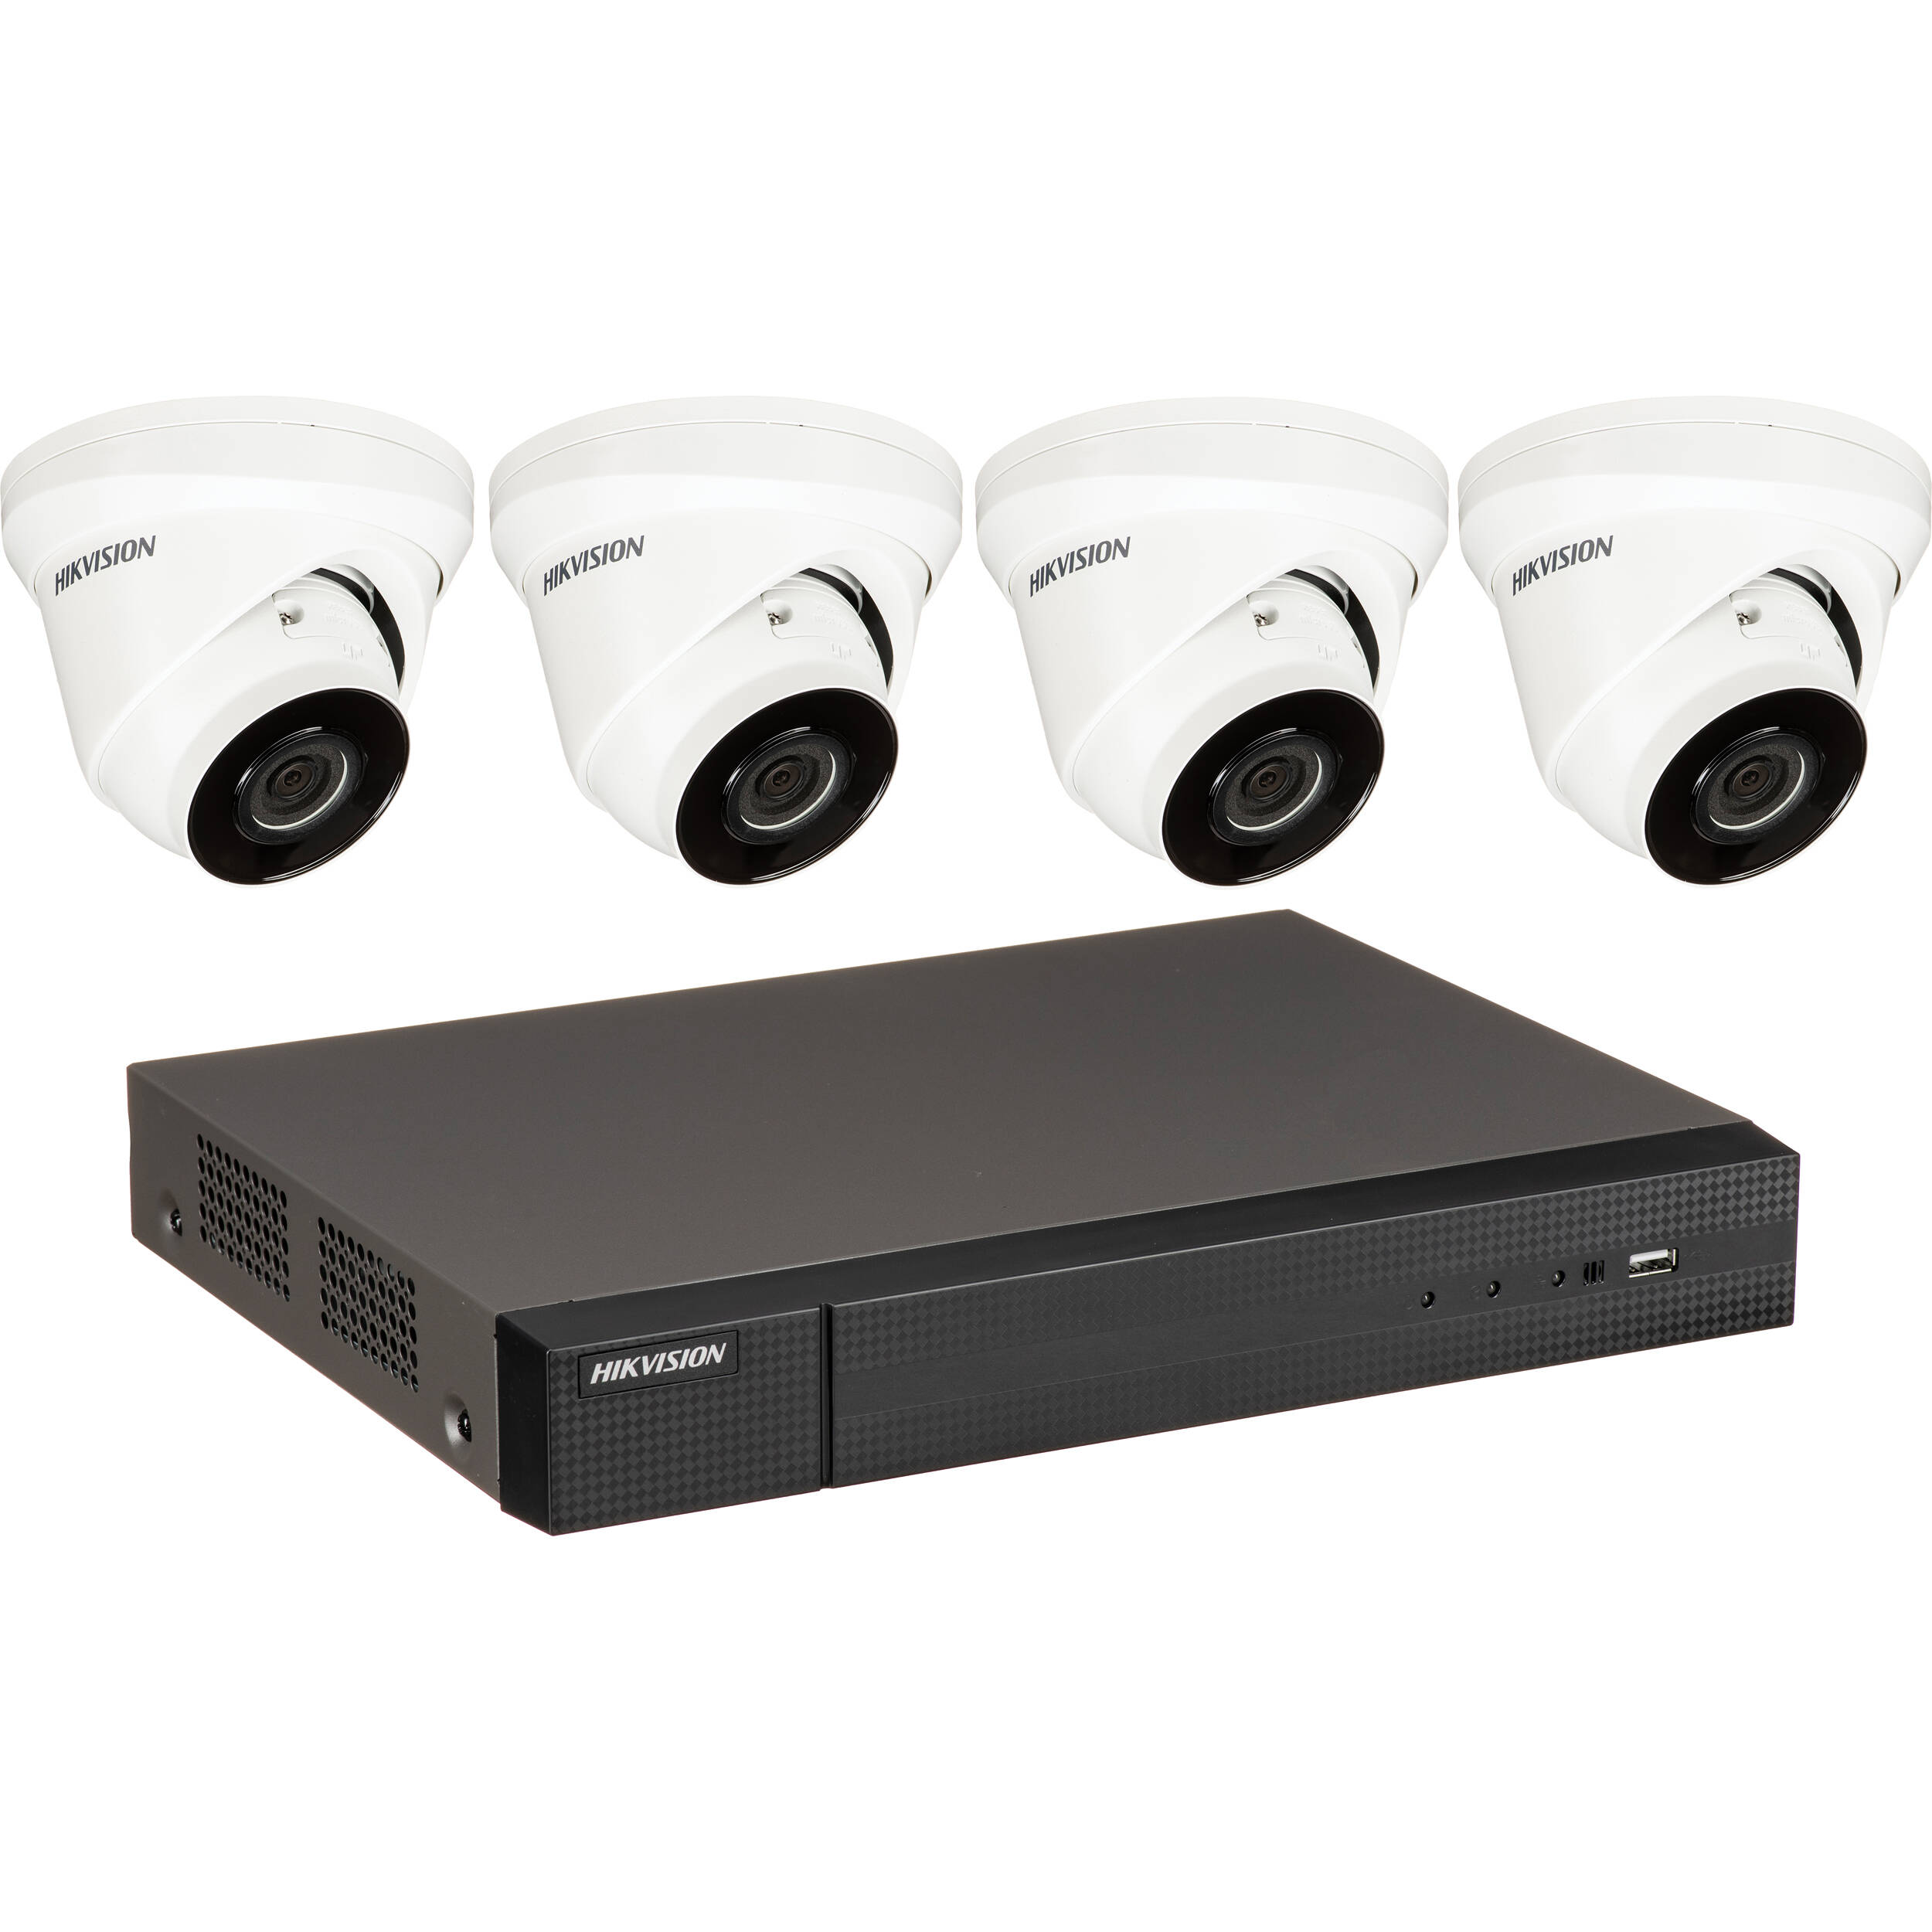 11 Kamera CCTV Terbaik di Dunia dengan Spek Memukau dan Teknologi Canggih!   